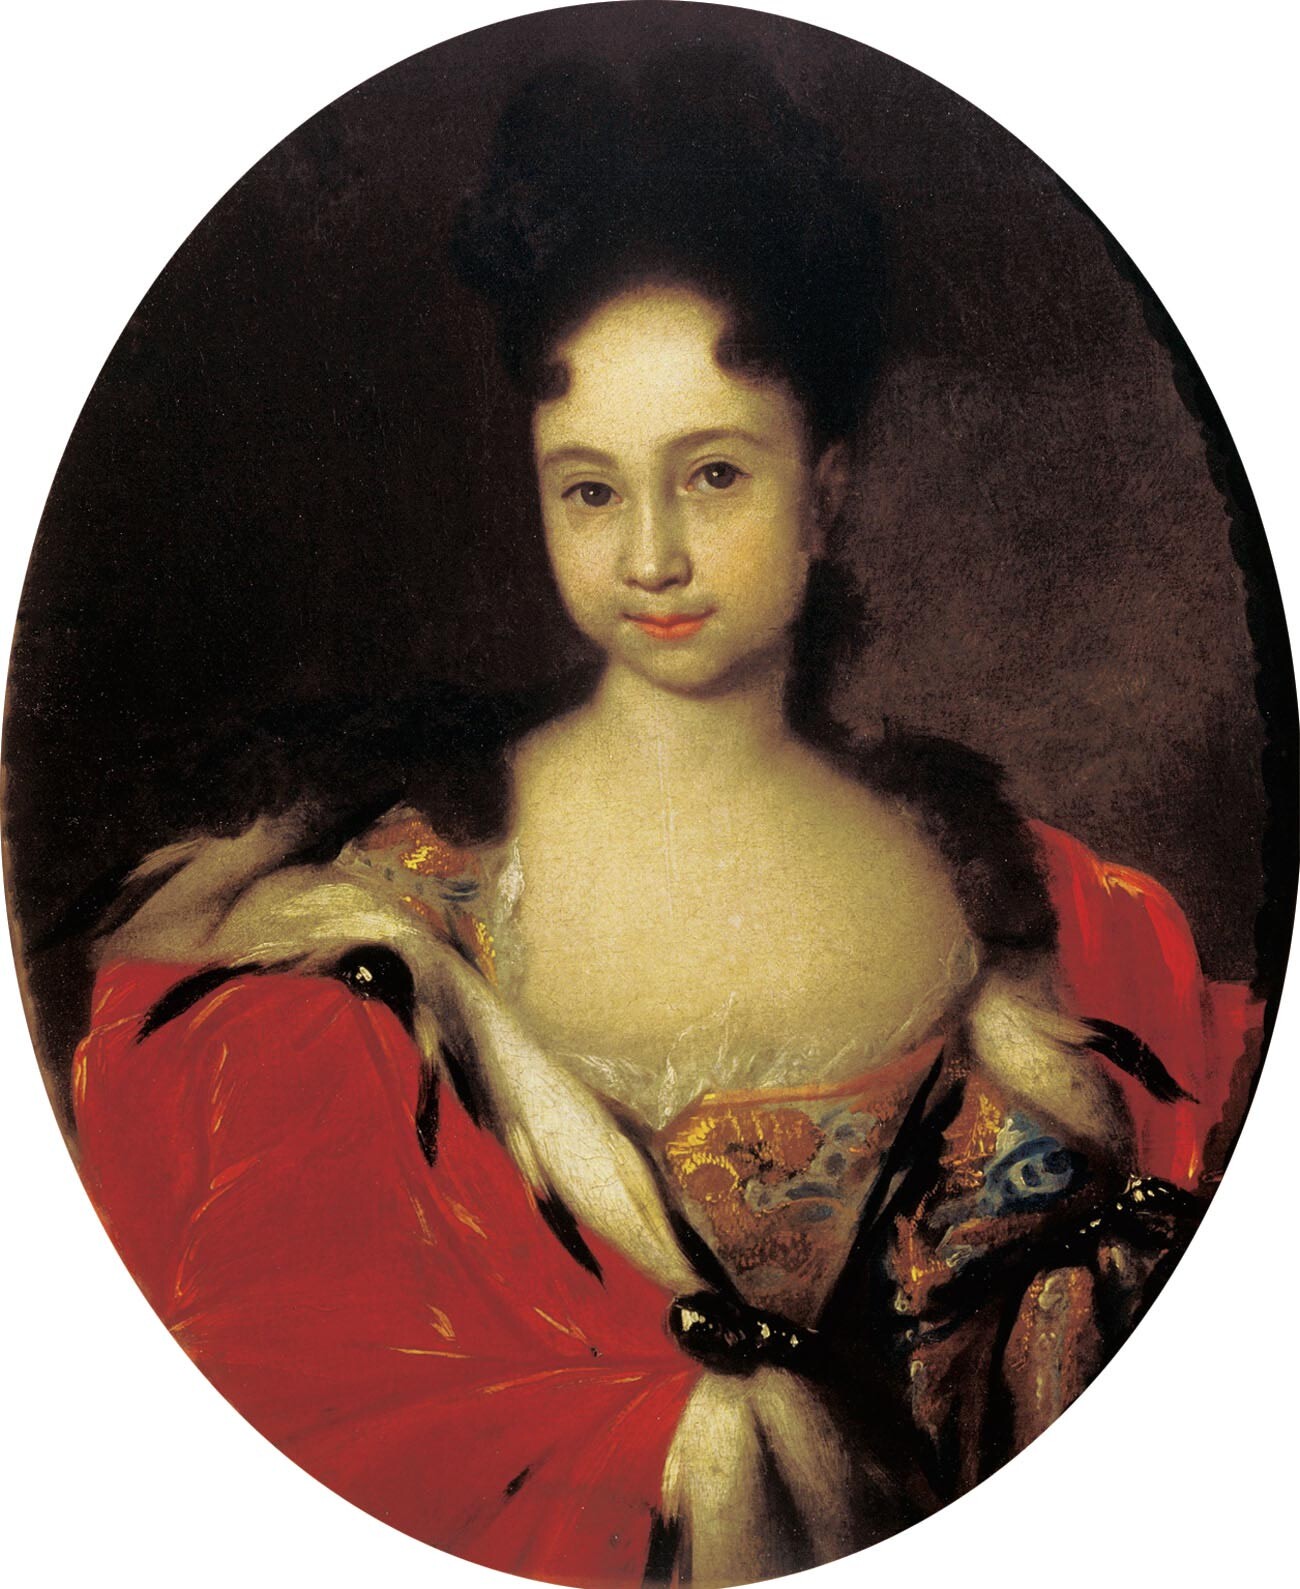 Portret cesarevne Ane Petrovne. Najpozneje leta 1716. Princesa je stara približno šest ali sedem let, vendar je oblečena in počesana kot odrasla dama. 